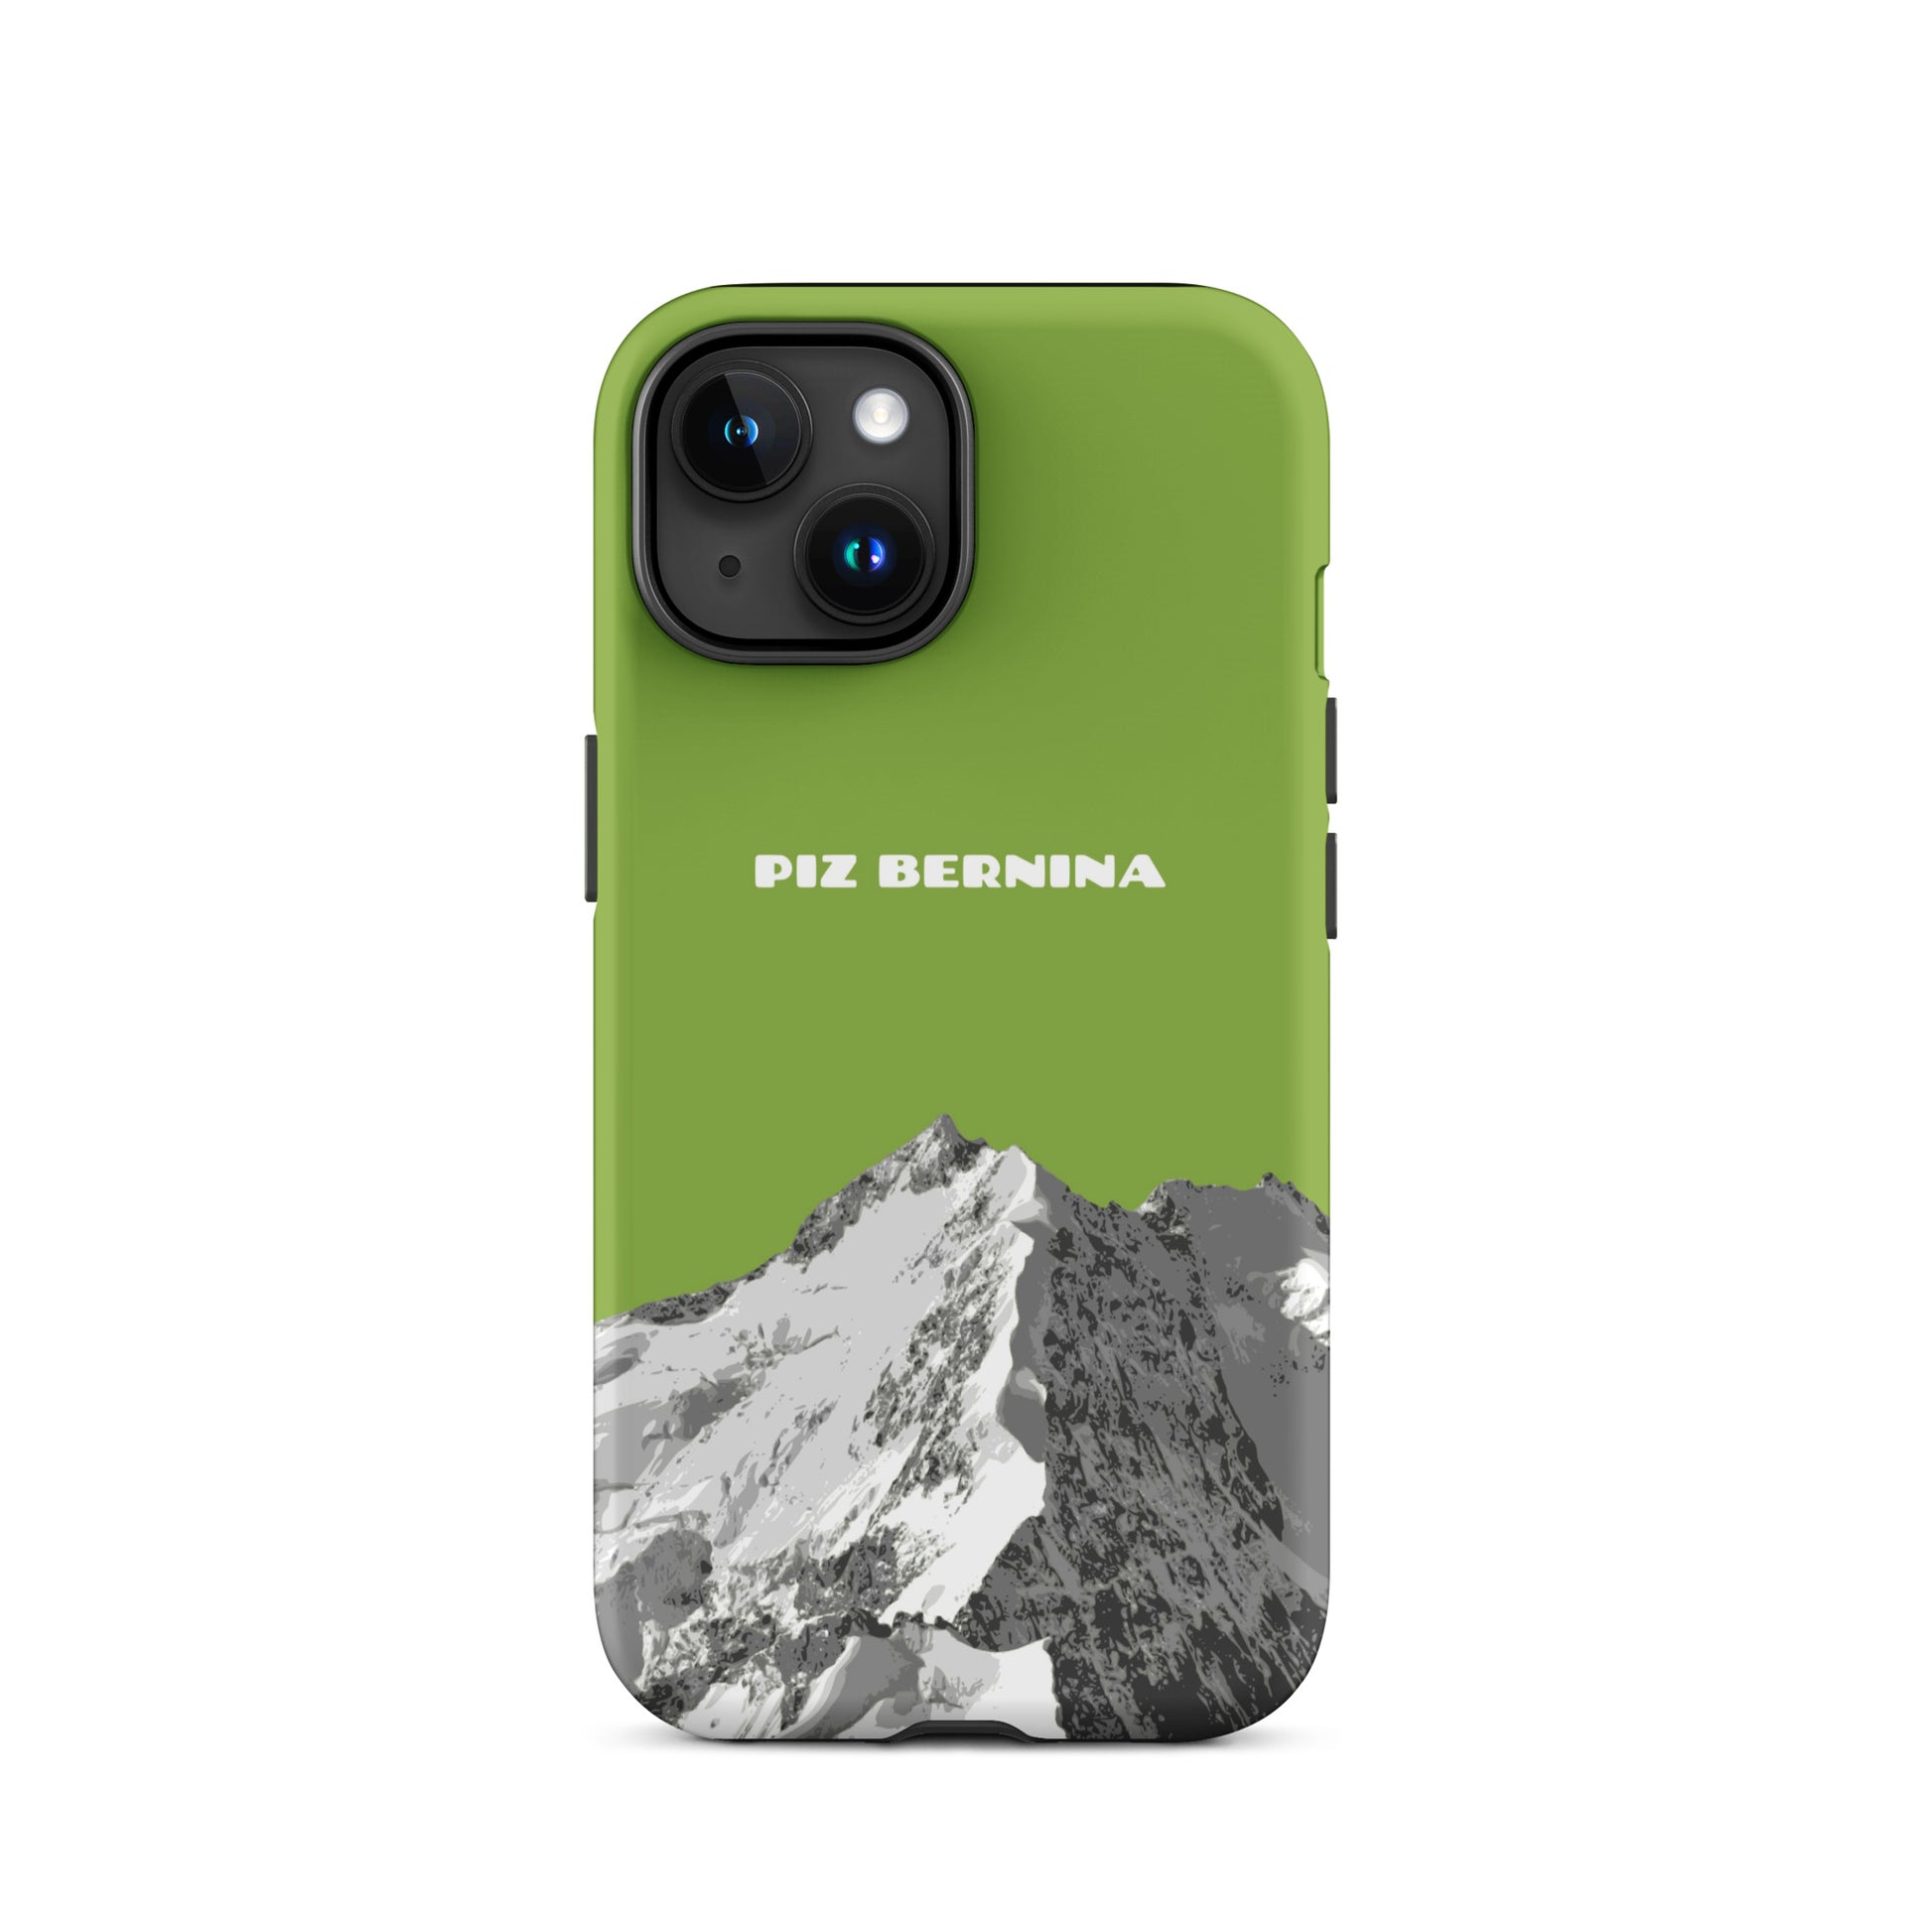 Hülle für das iPhone 15 von Apple in der Farbe Gelbgrün, dass den Piz Bernina in Graubünden zeigt.